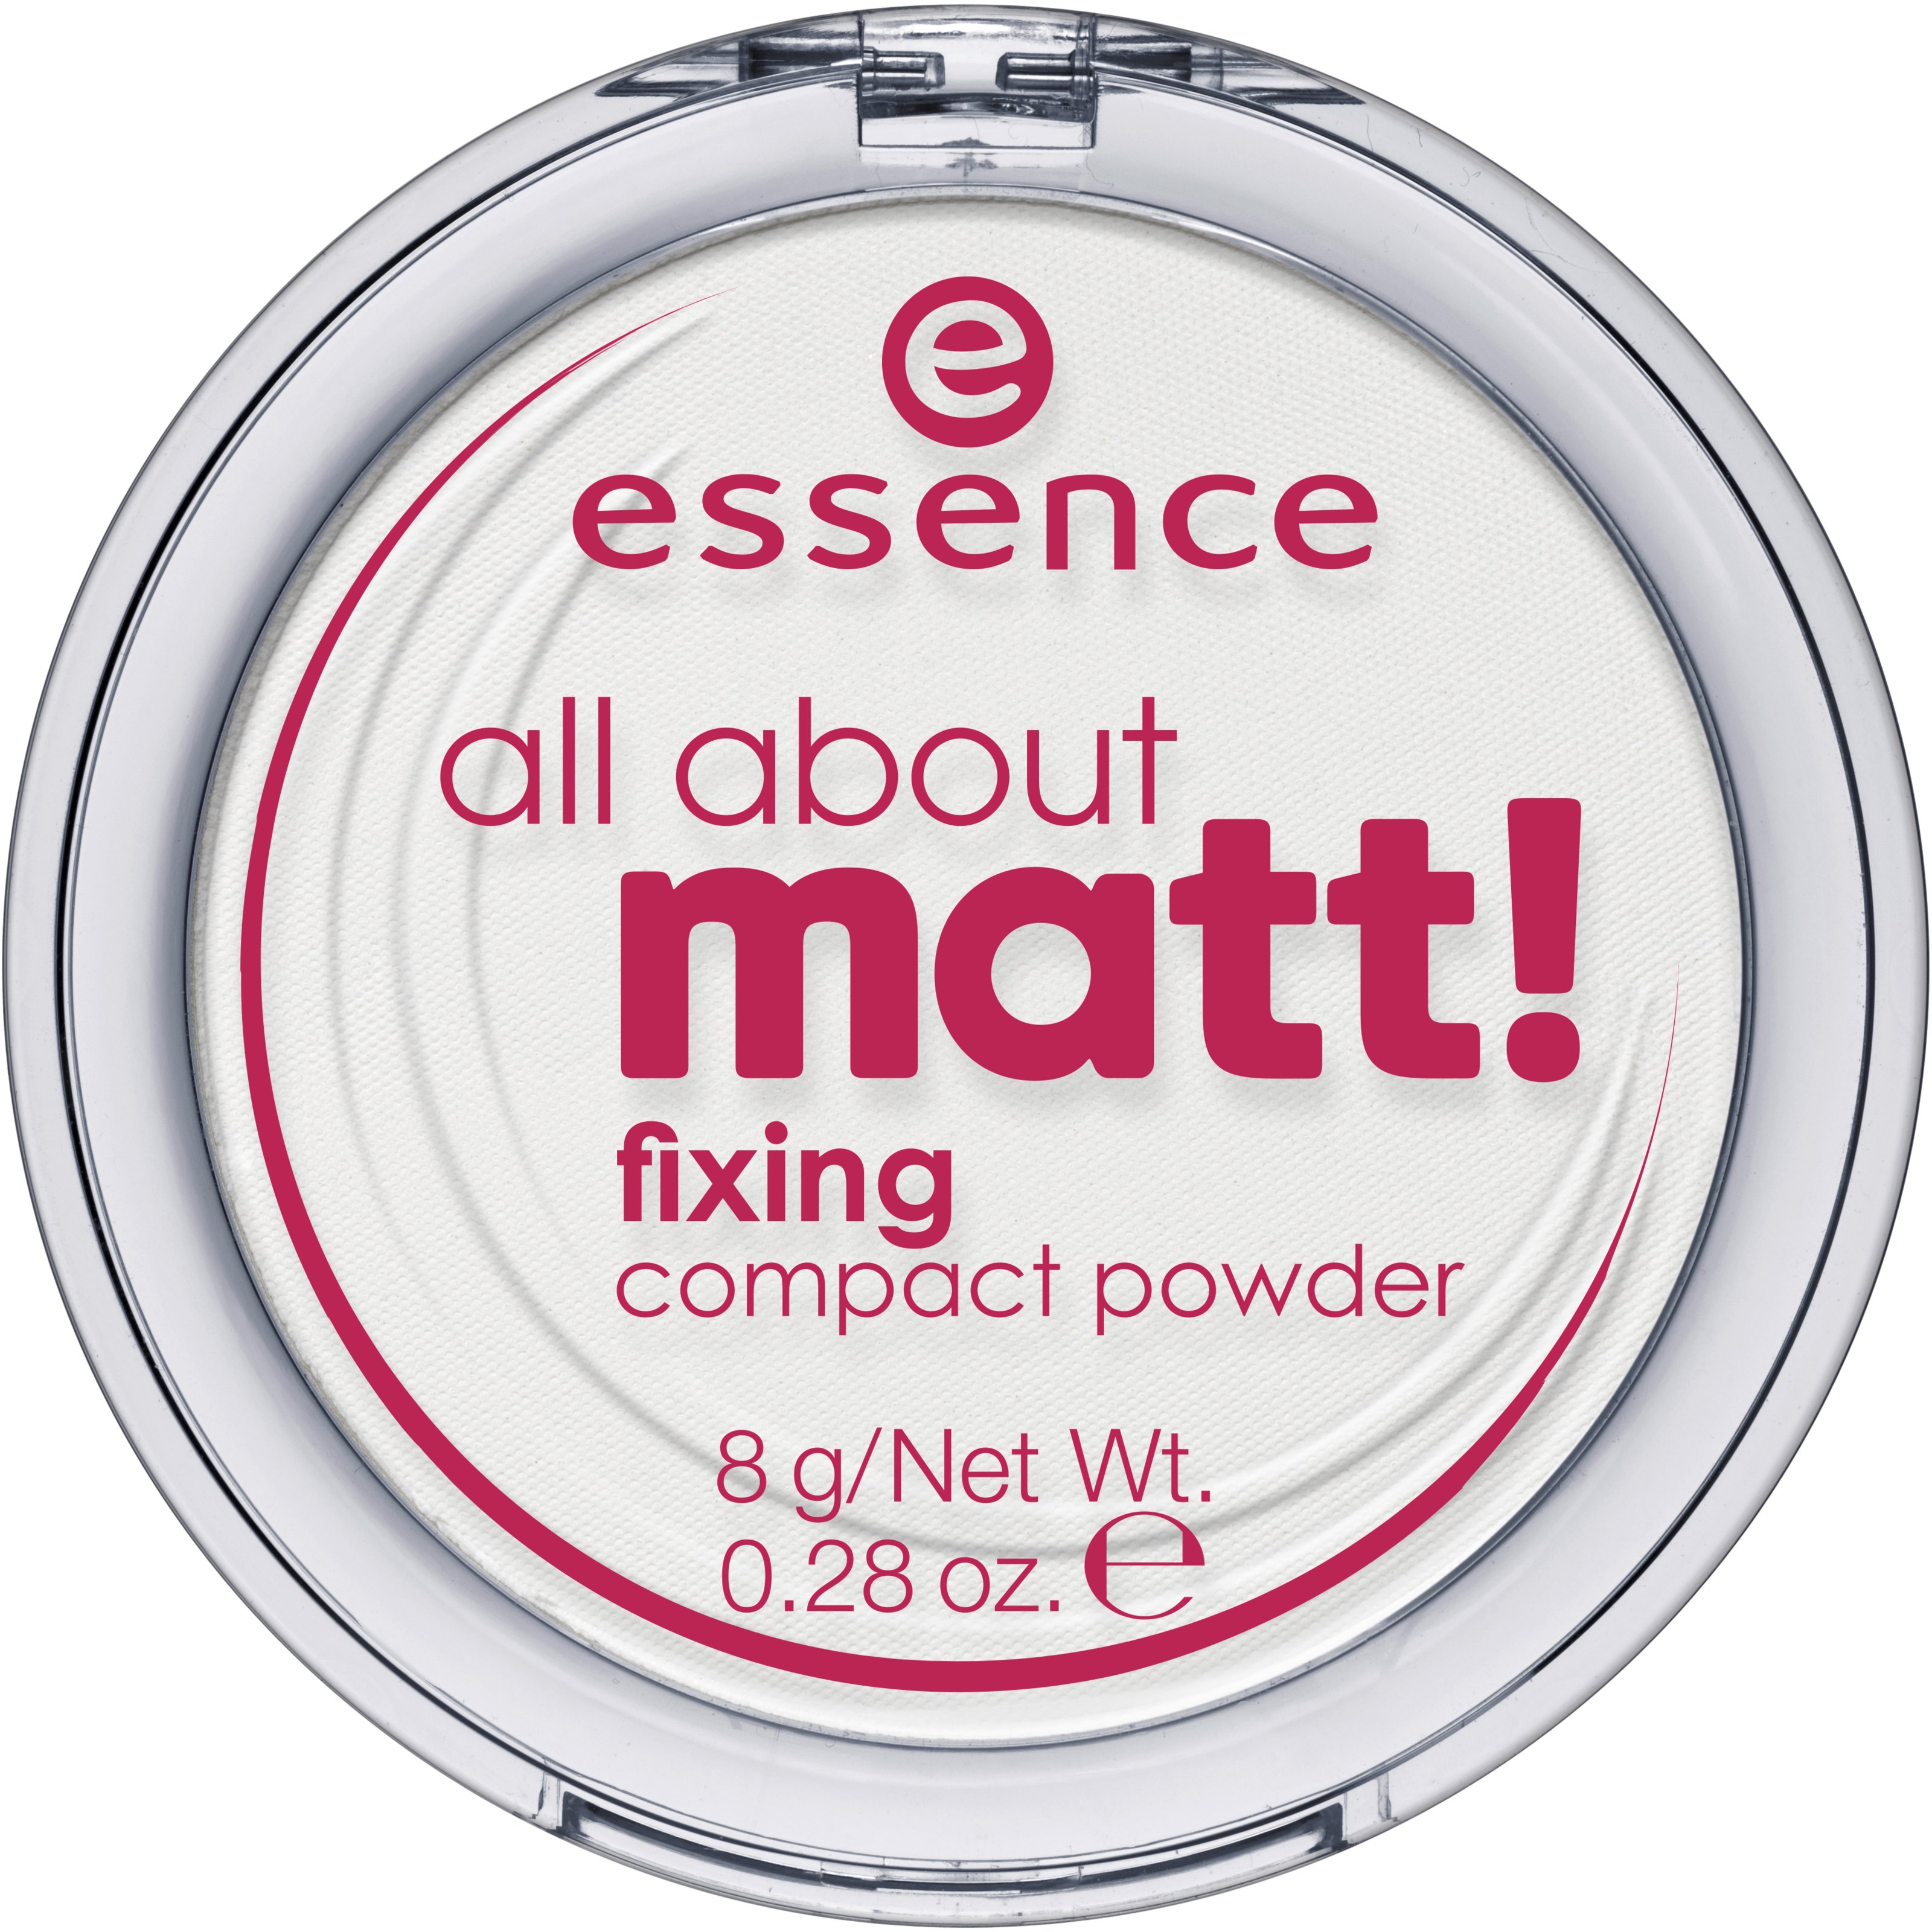 Läs mer om essence all about matt! fixing compact powder 8 g